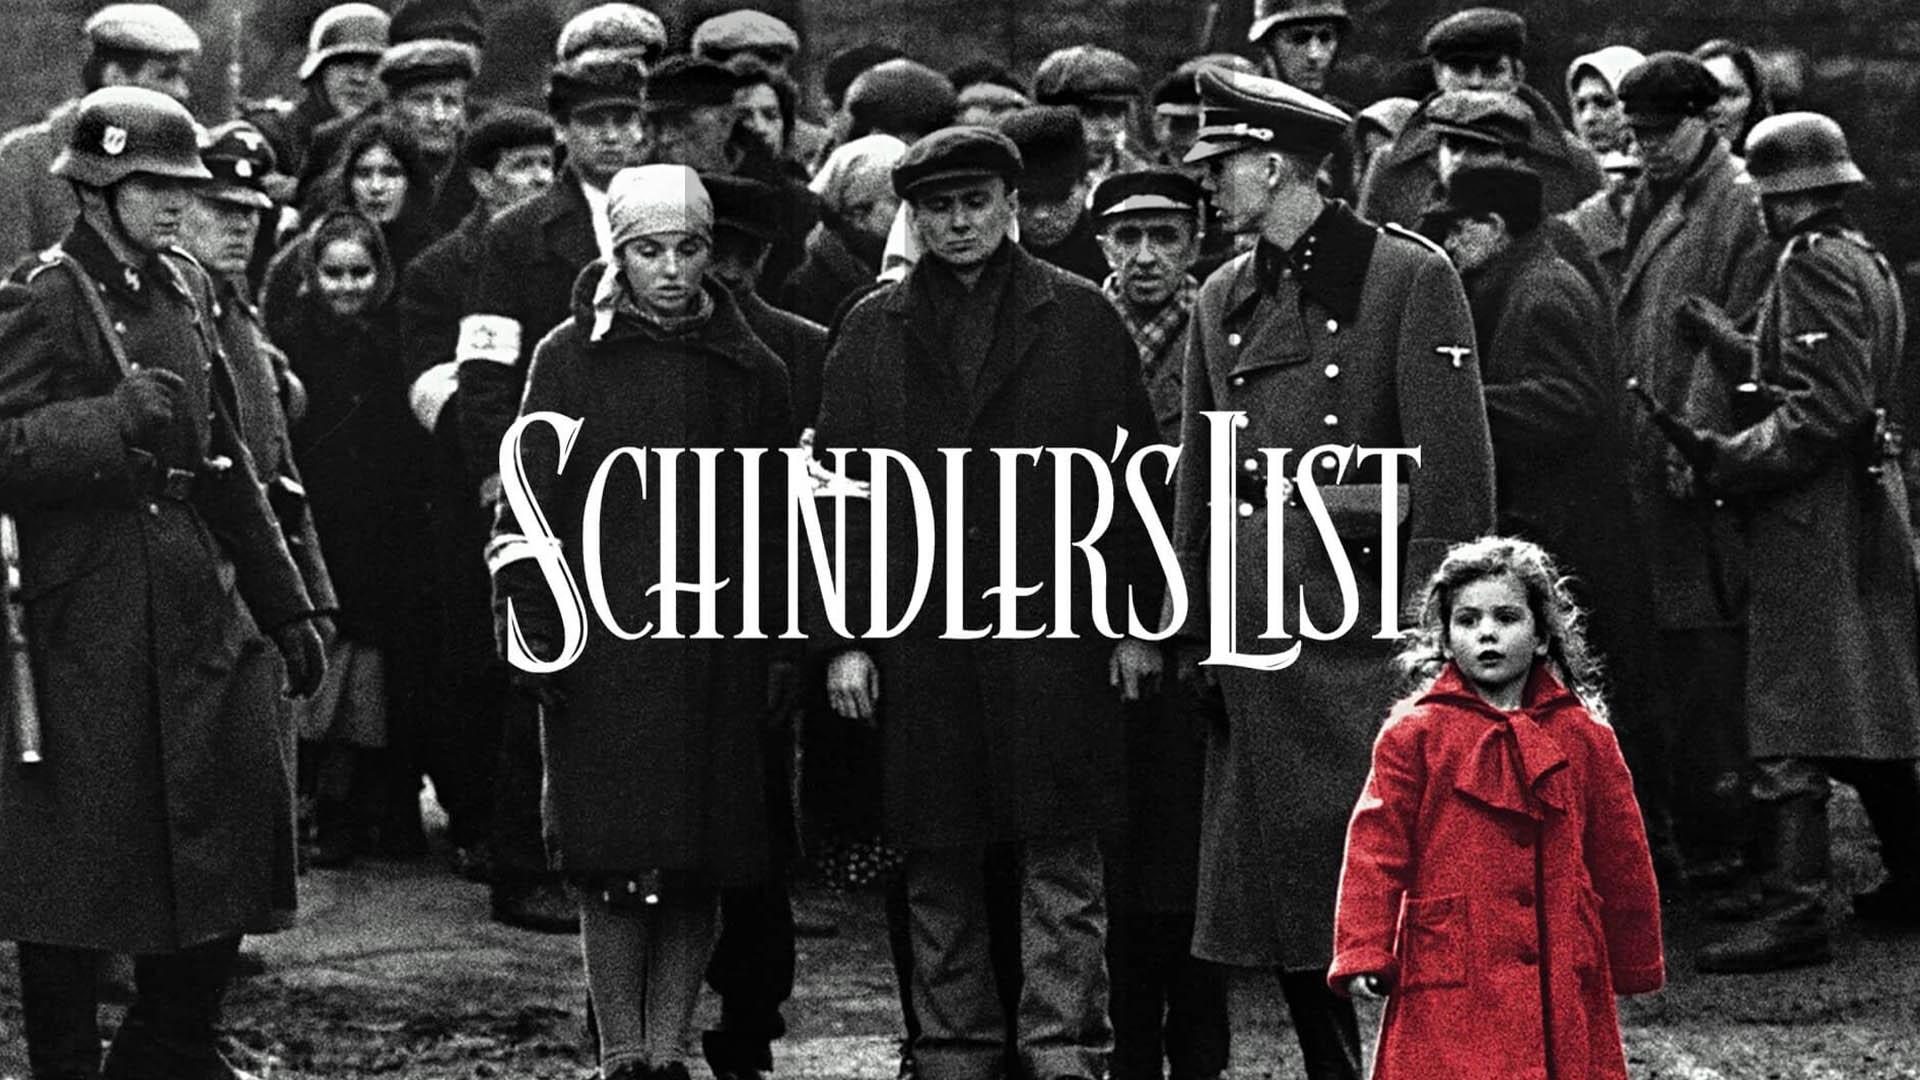 حقایق جالب فیلم Schindler's List | از جزییات ساخت تا داستان واقعی اسکار شیندلر